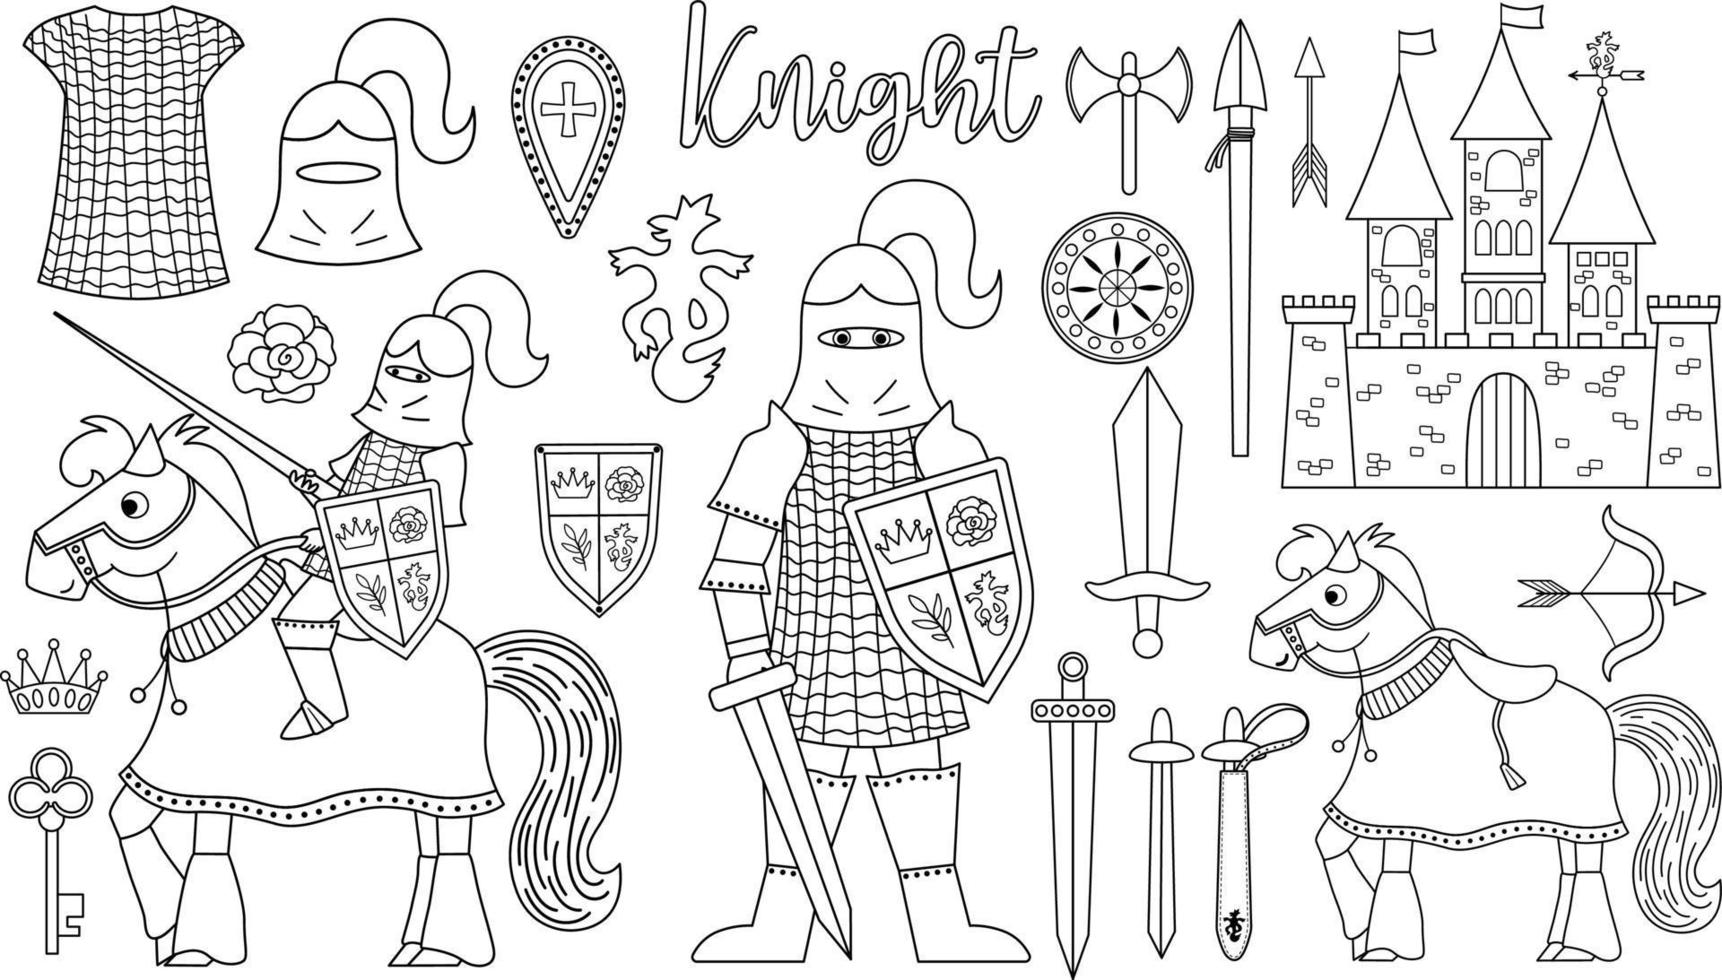 sprookje zwart-wit ridder armor collectie. grote vector lijn set met fantasie gepantserde krijger en kasteel. sprookjesachtige soldatenpak of kleurplaat met zwaard, schild, paard, kroon, maliënkolder